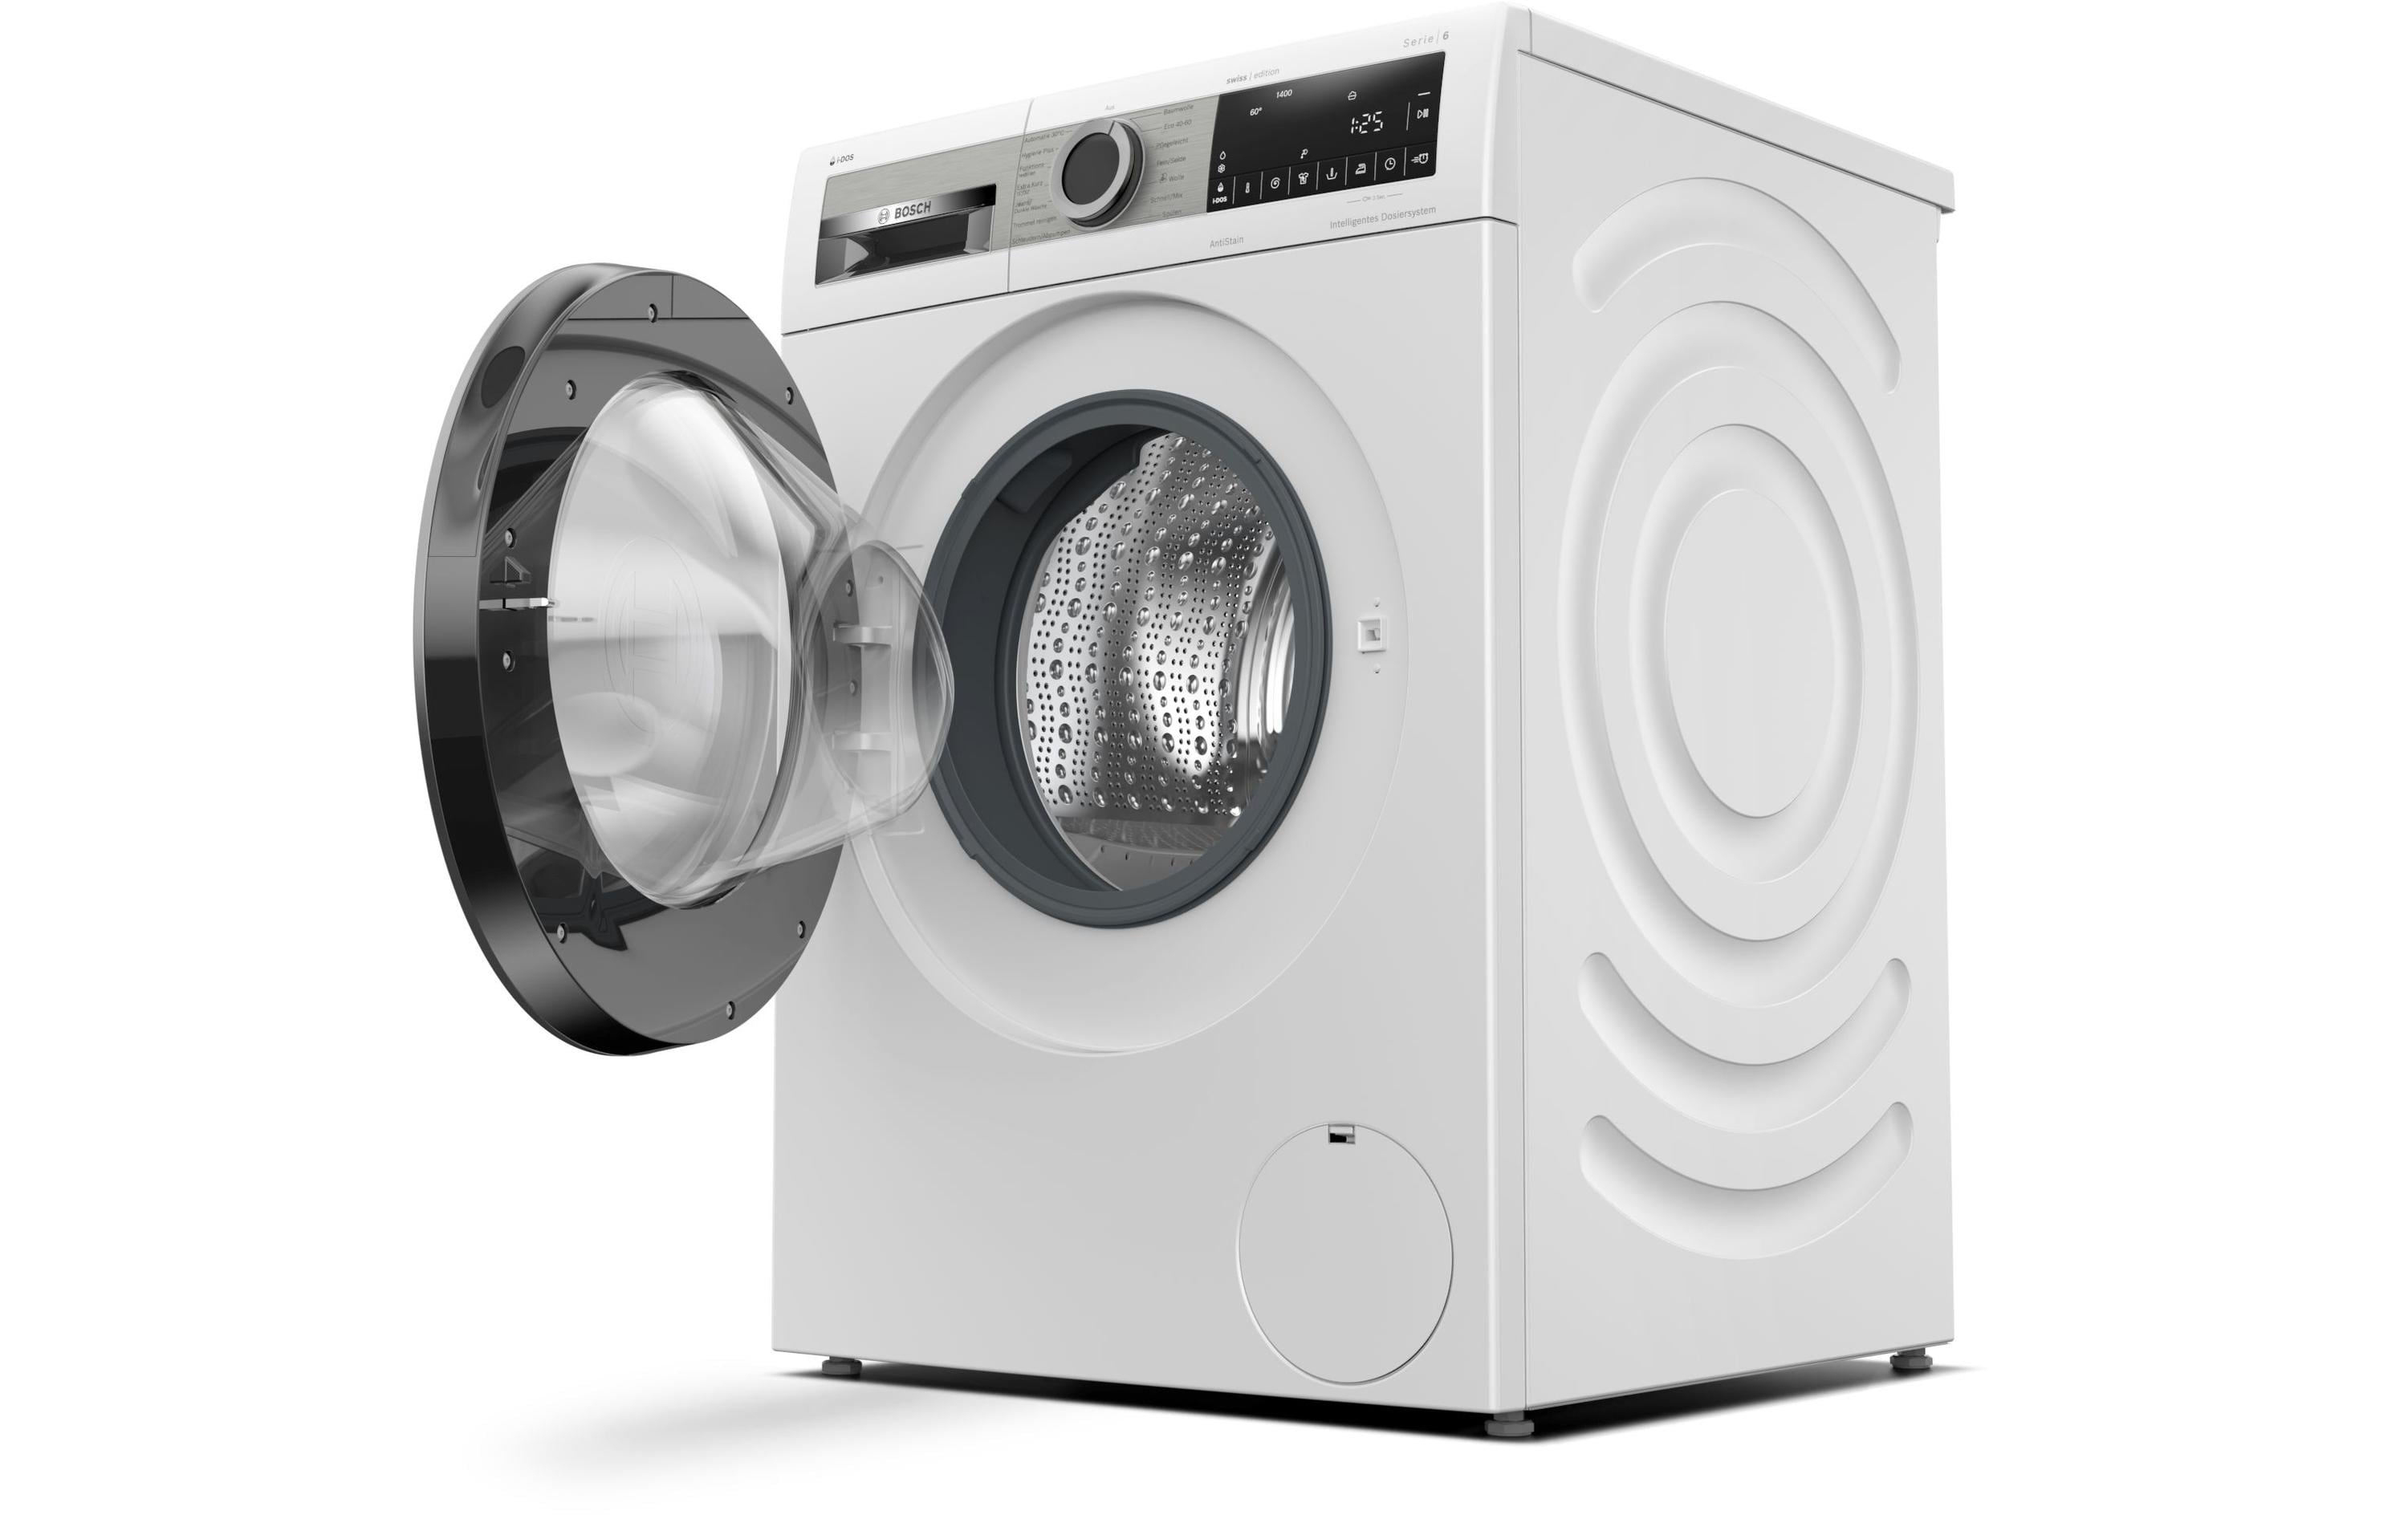 Bosch Waschmaschine WGG244A0CH, Links